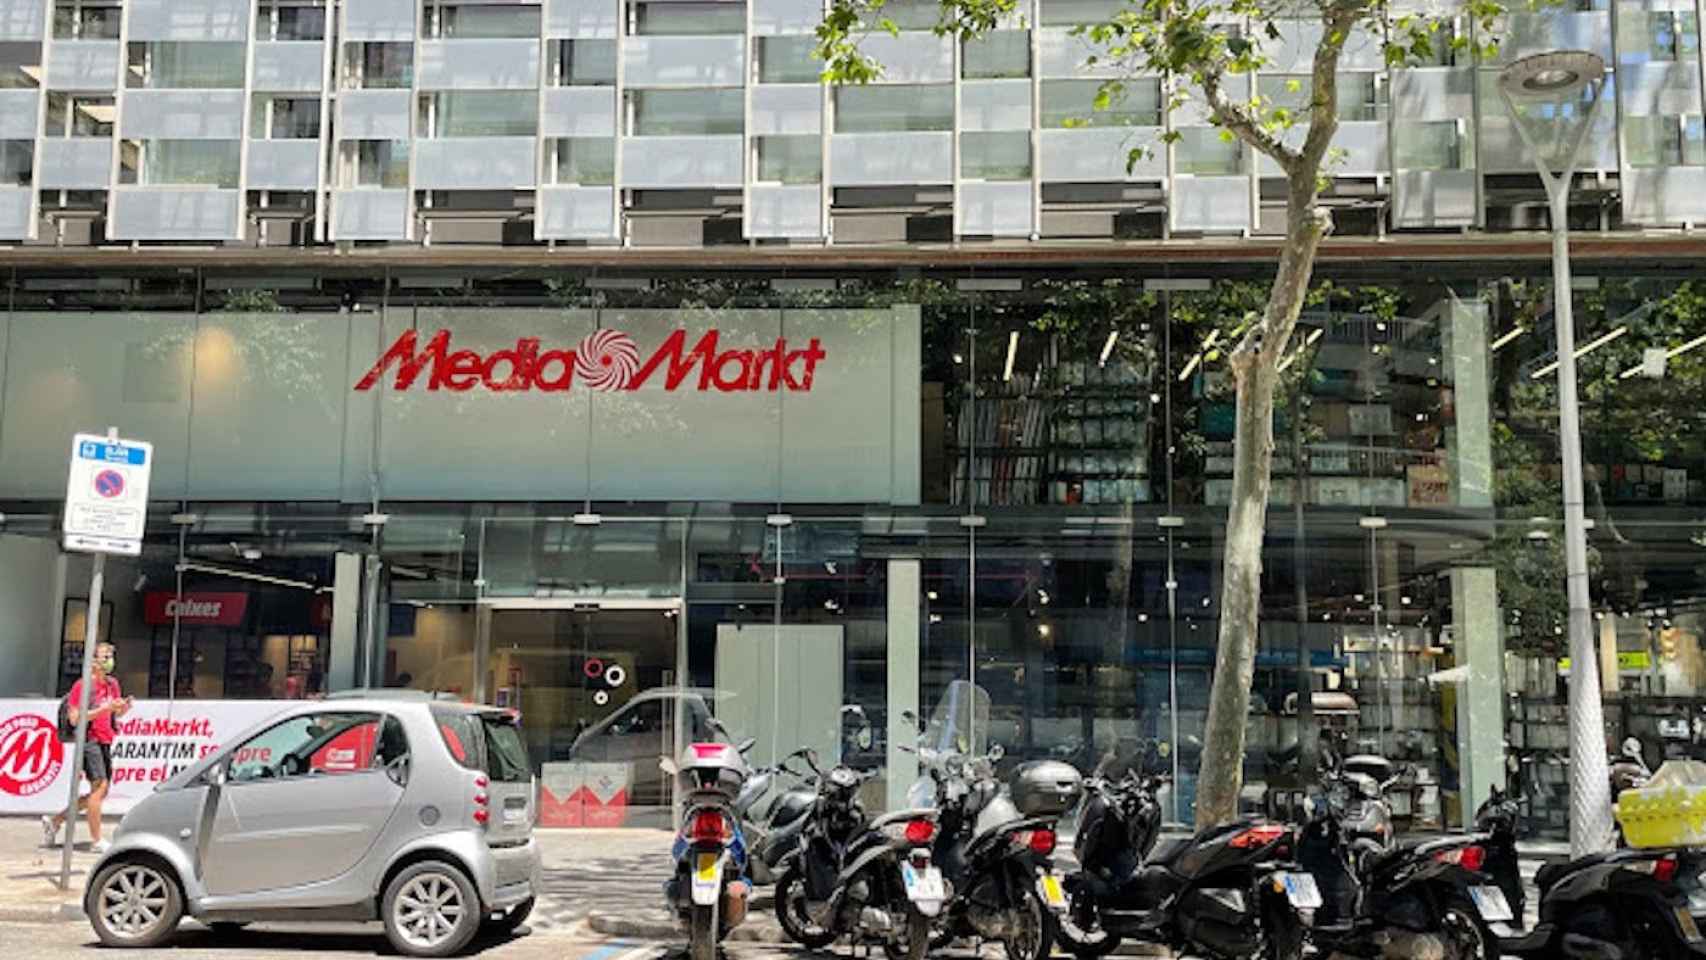 Mediamarkt situado entre la calle Floridablanca y Casanova de Barcelona / GOOGLE